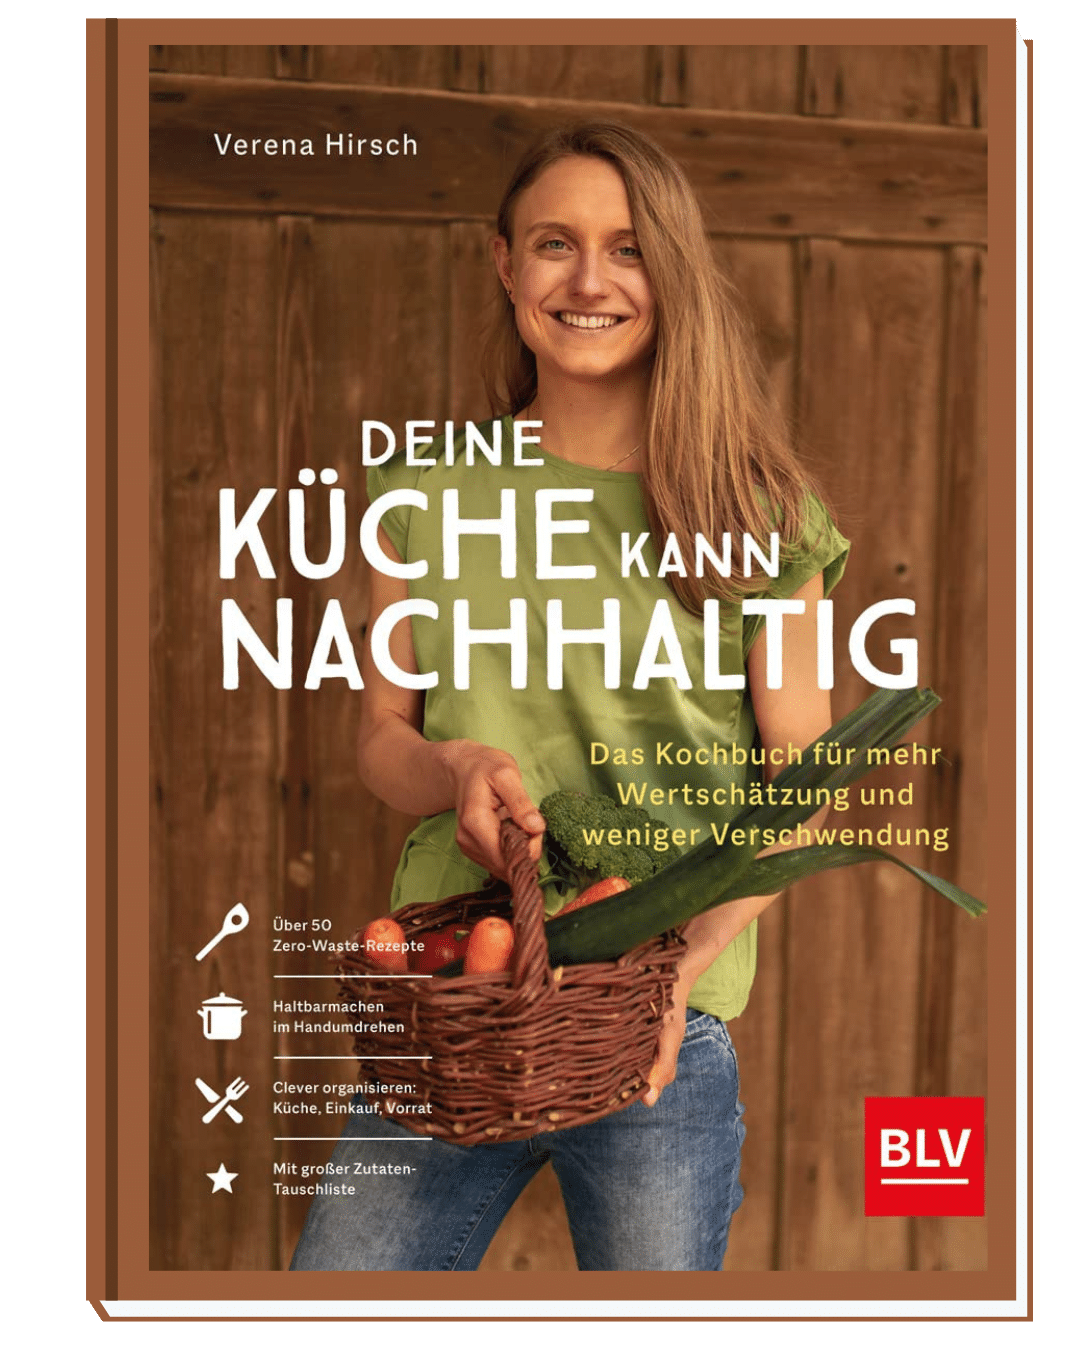 Deine Küche kann nachhaltig - Das Kochbuch für mehr Wertschätzung und weniger Verschwendung von Verena HIrsch